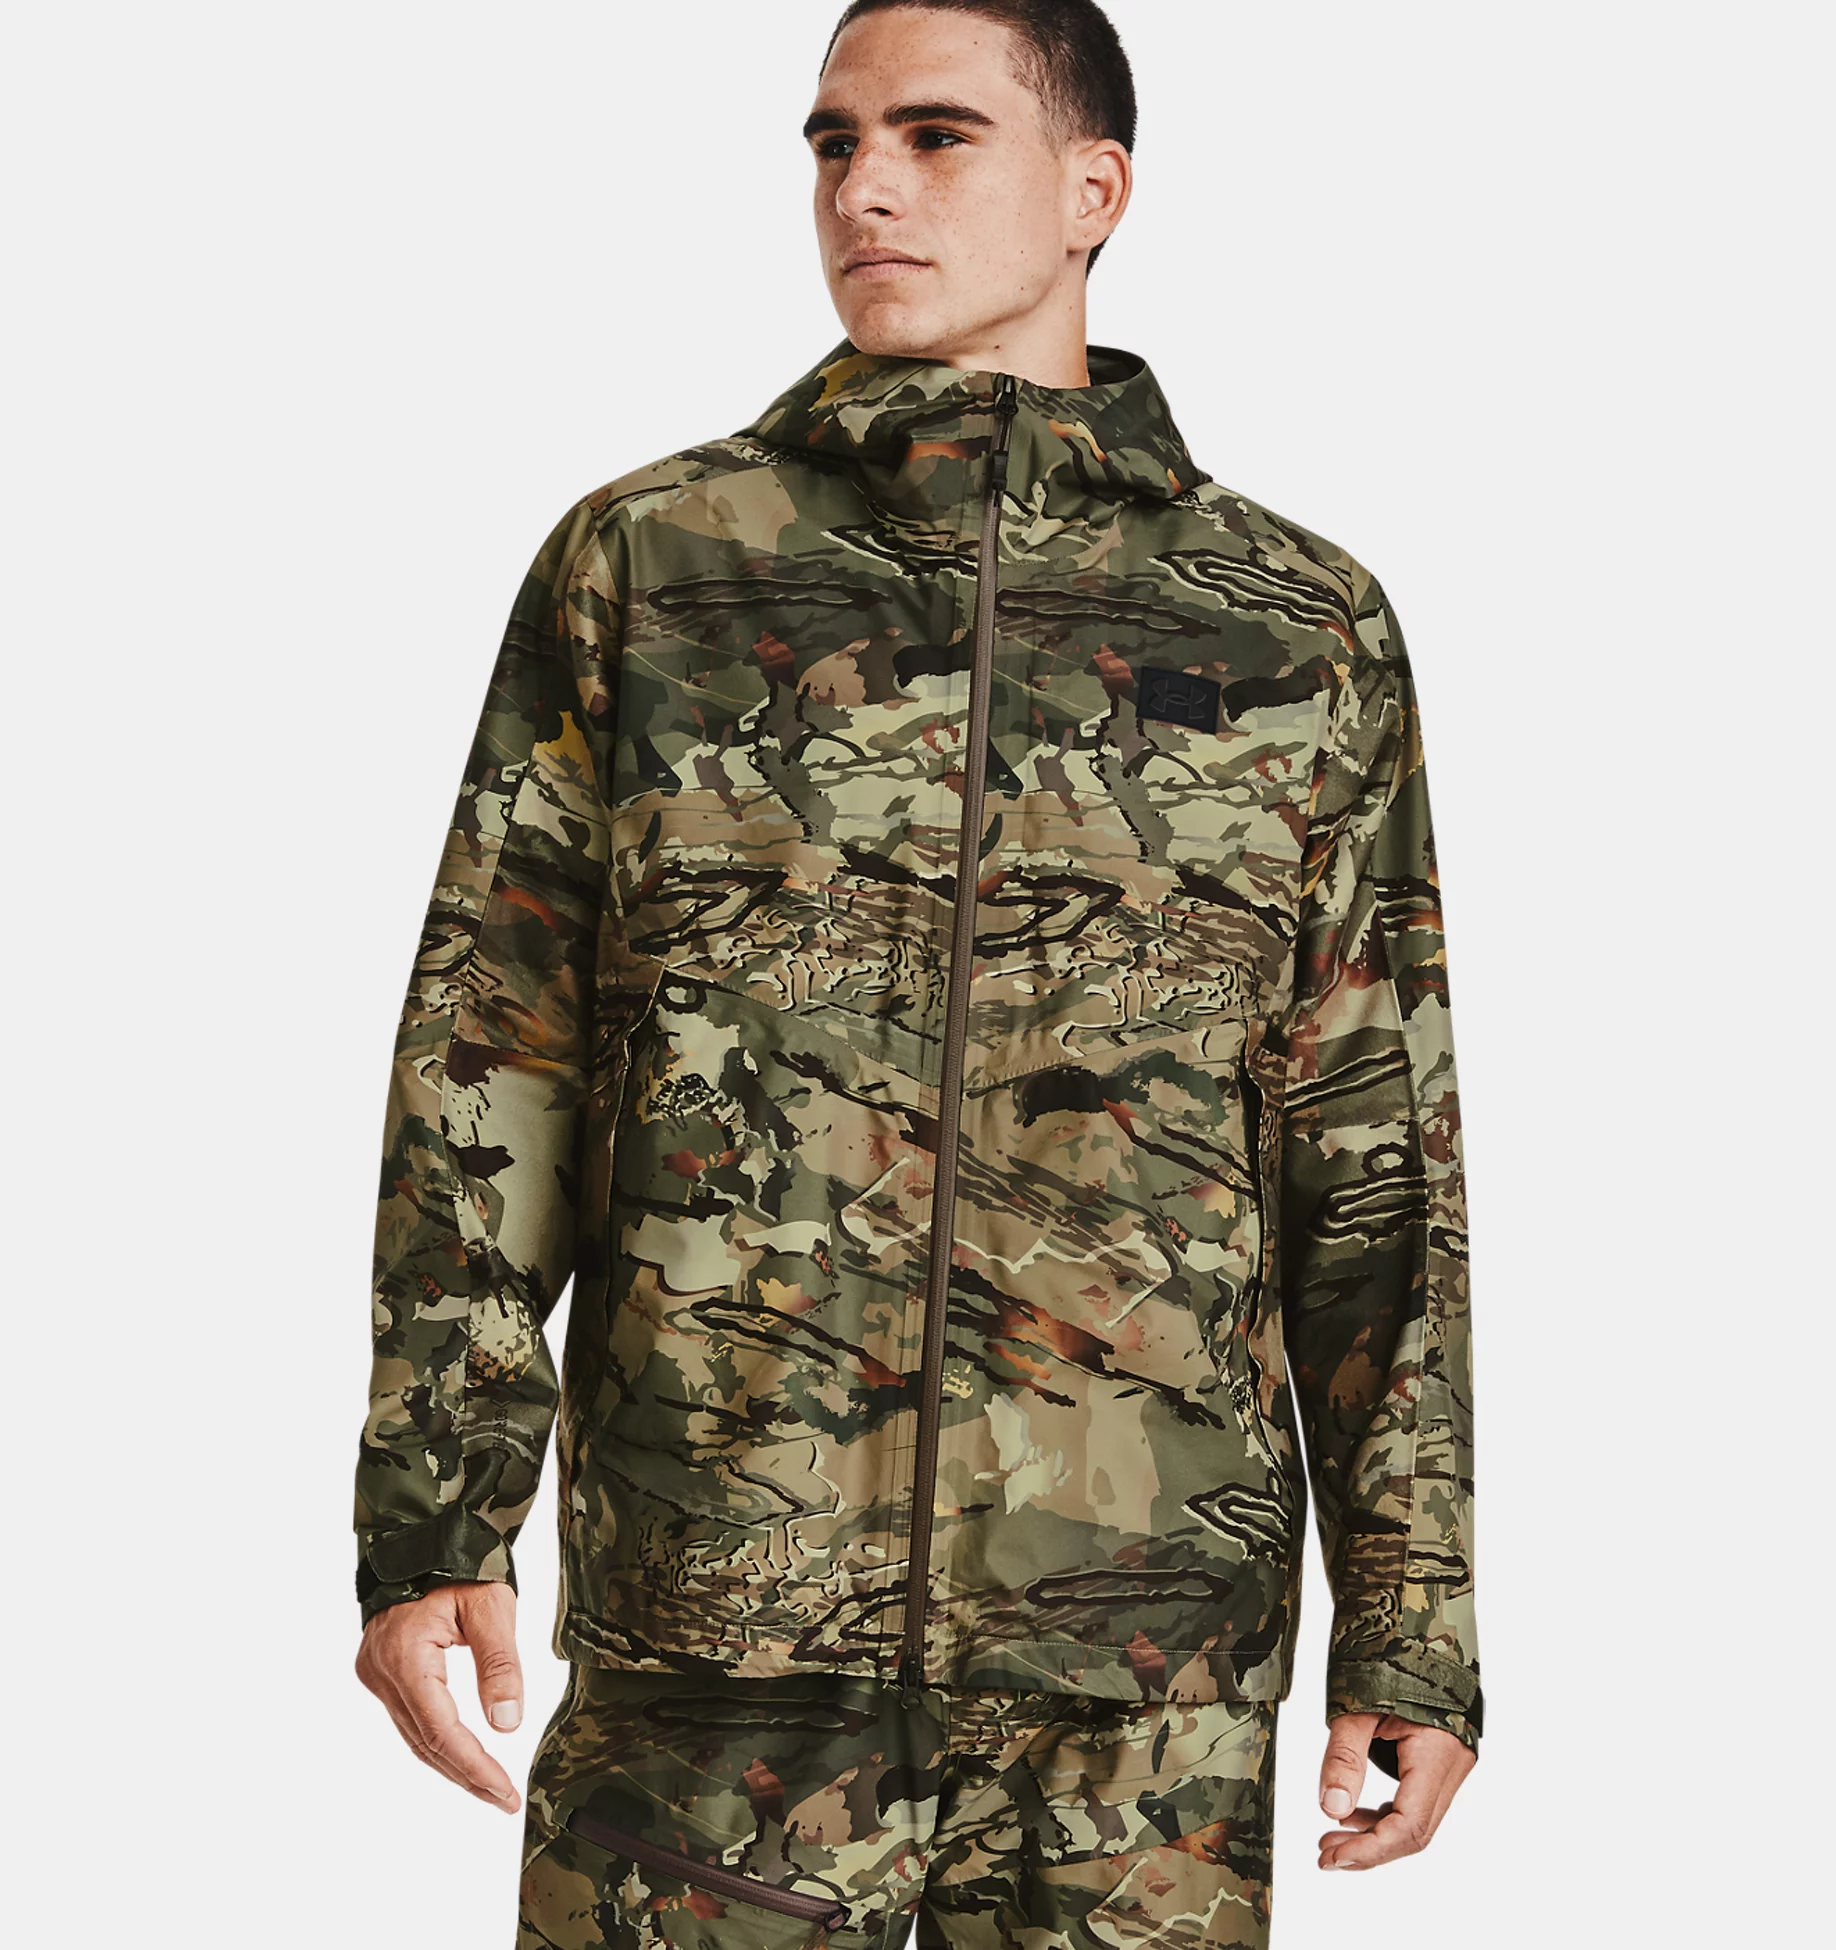 Under Armour Men's GORE-TEX Essential Hybrid Jacket